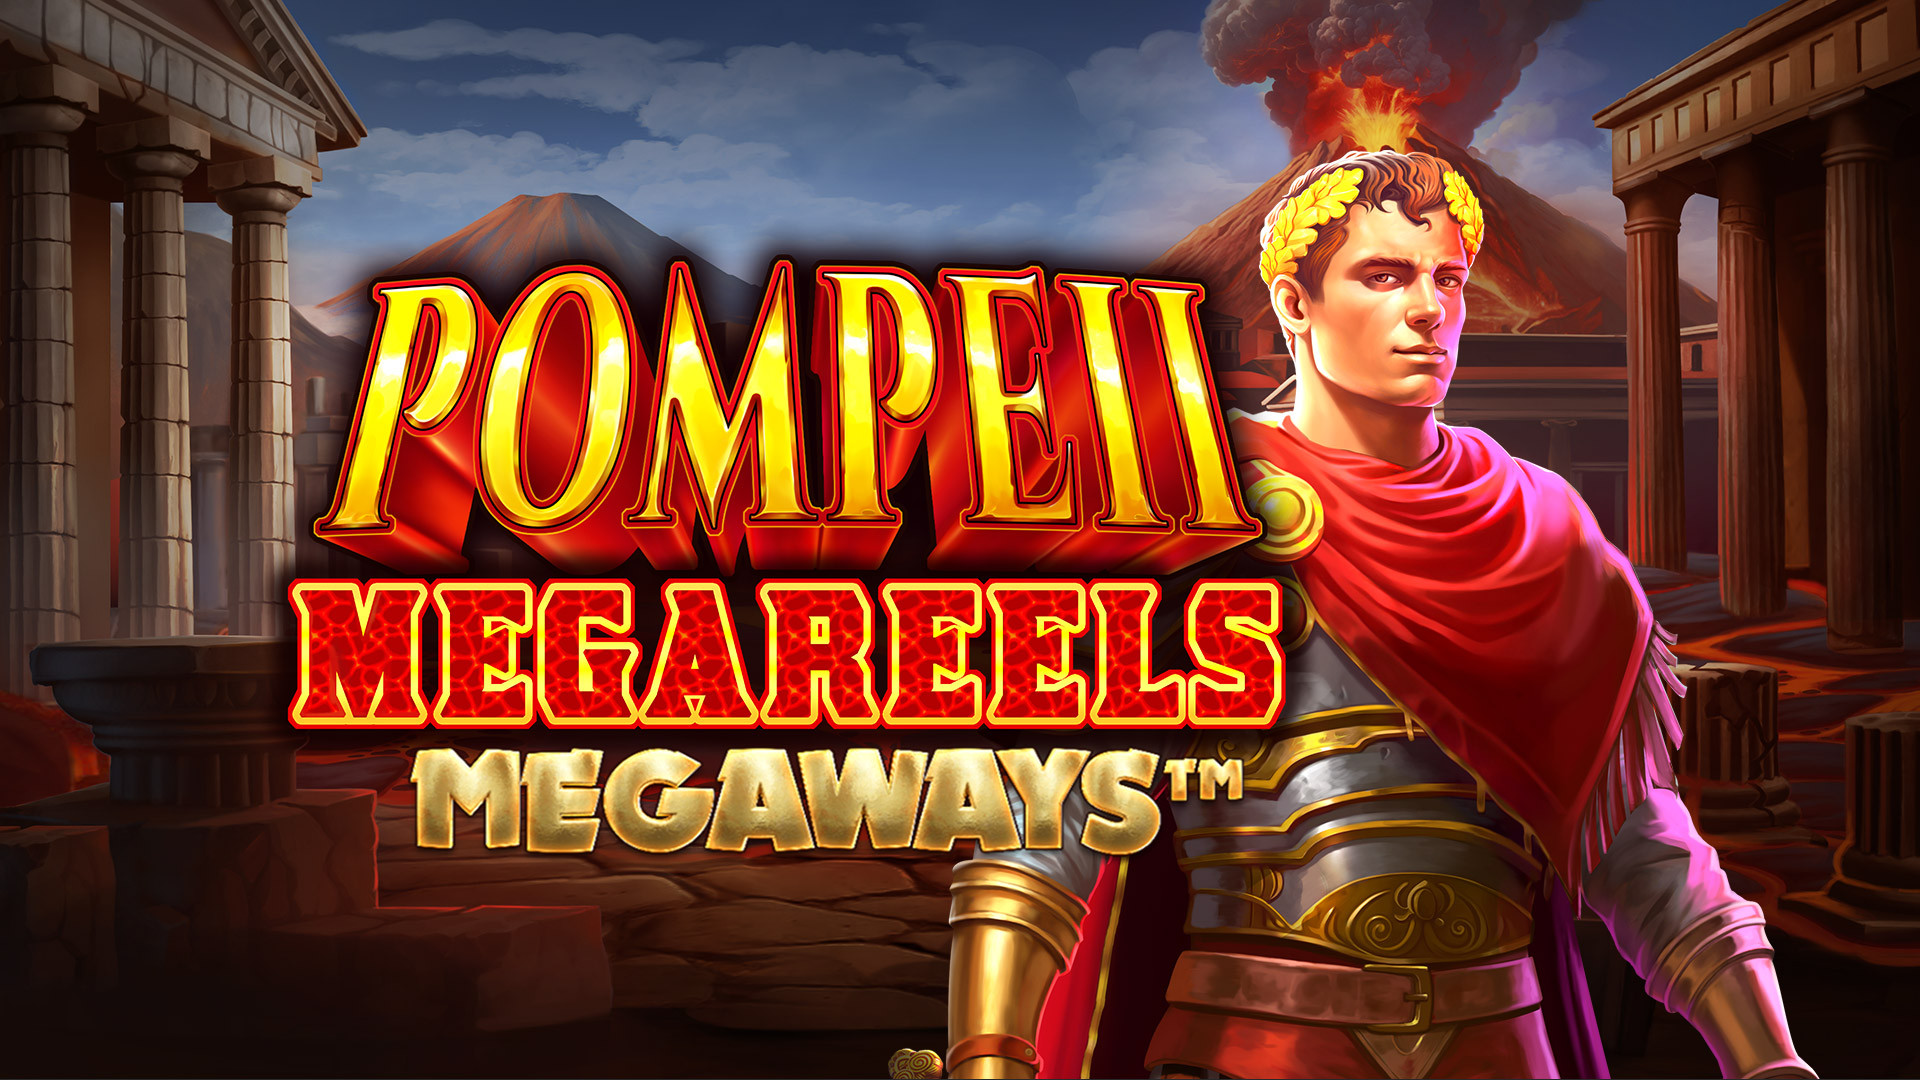 Pompeii Megareels MEGAWAYS